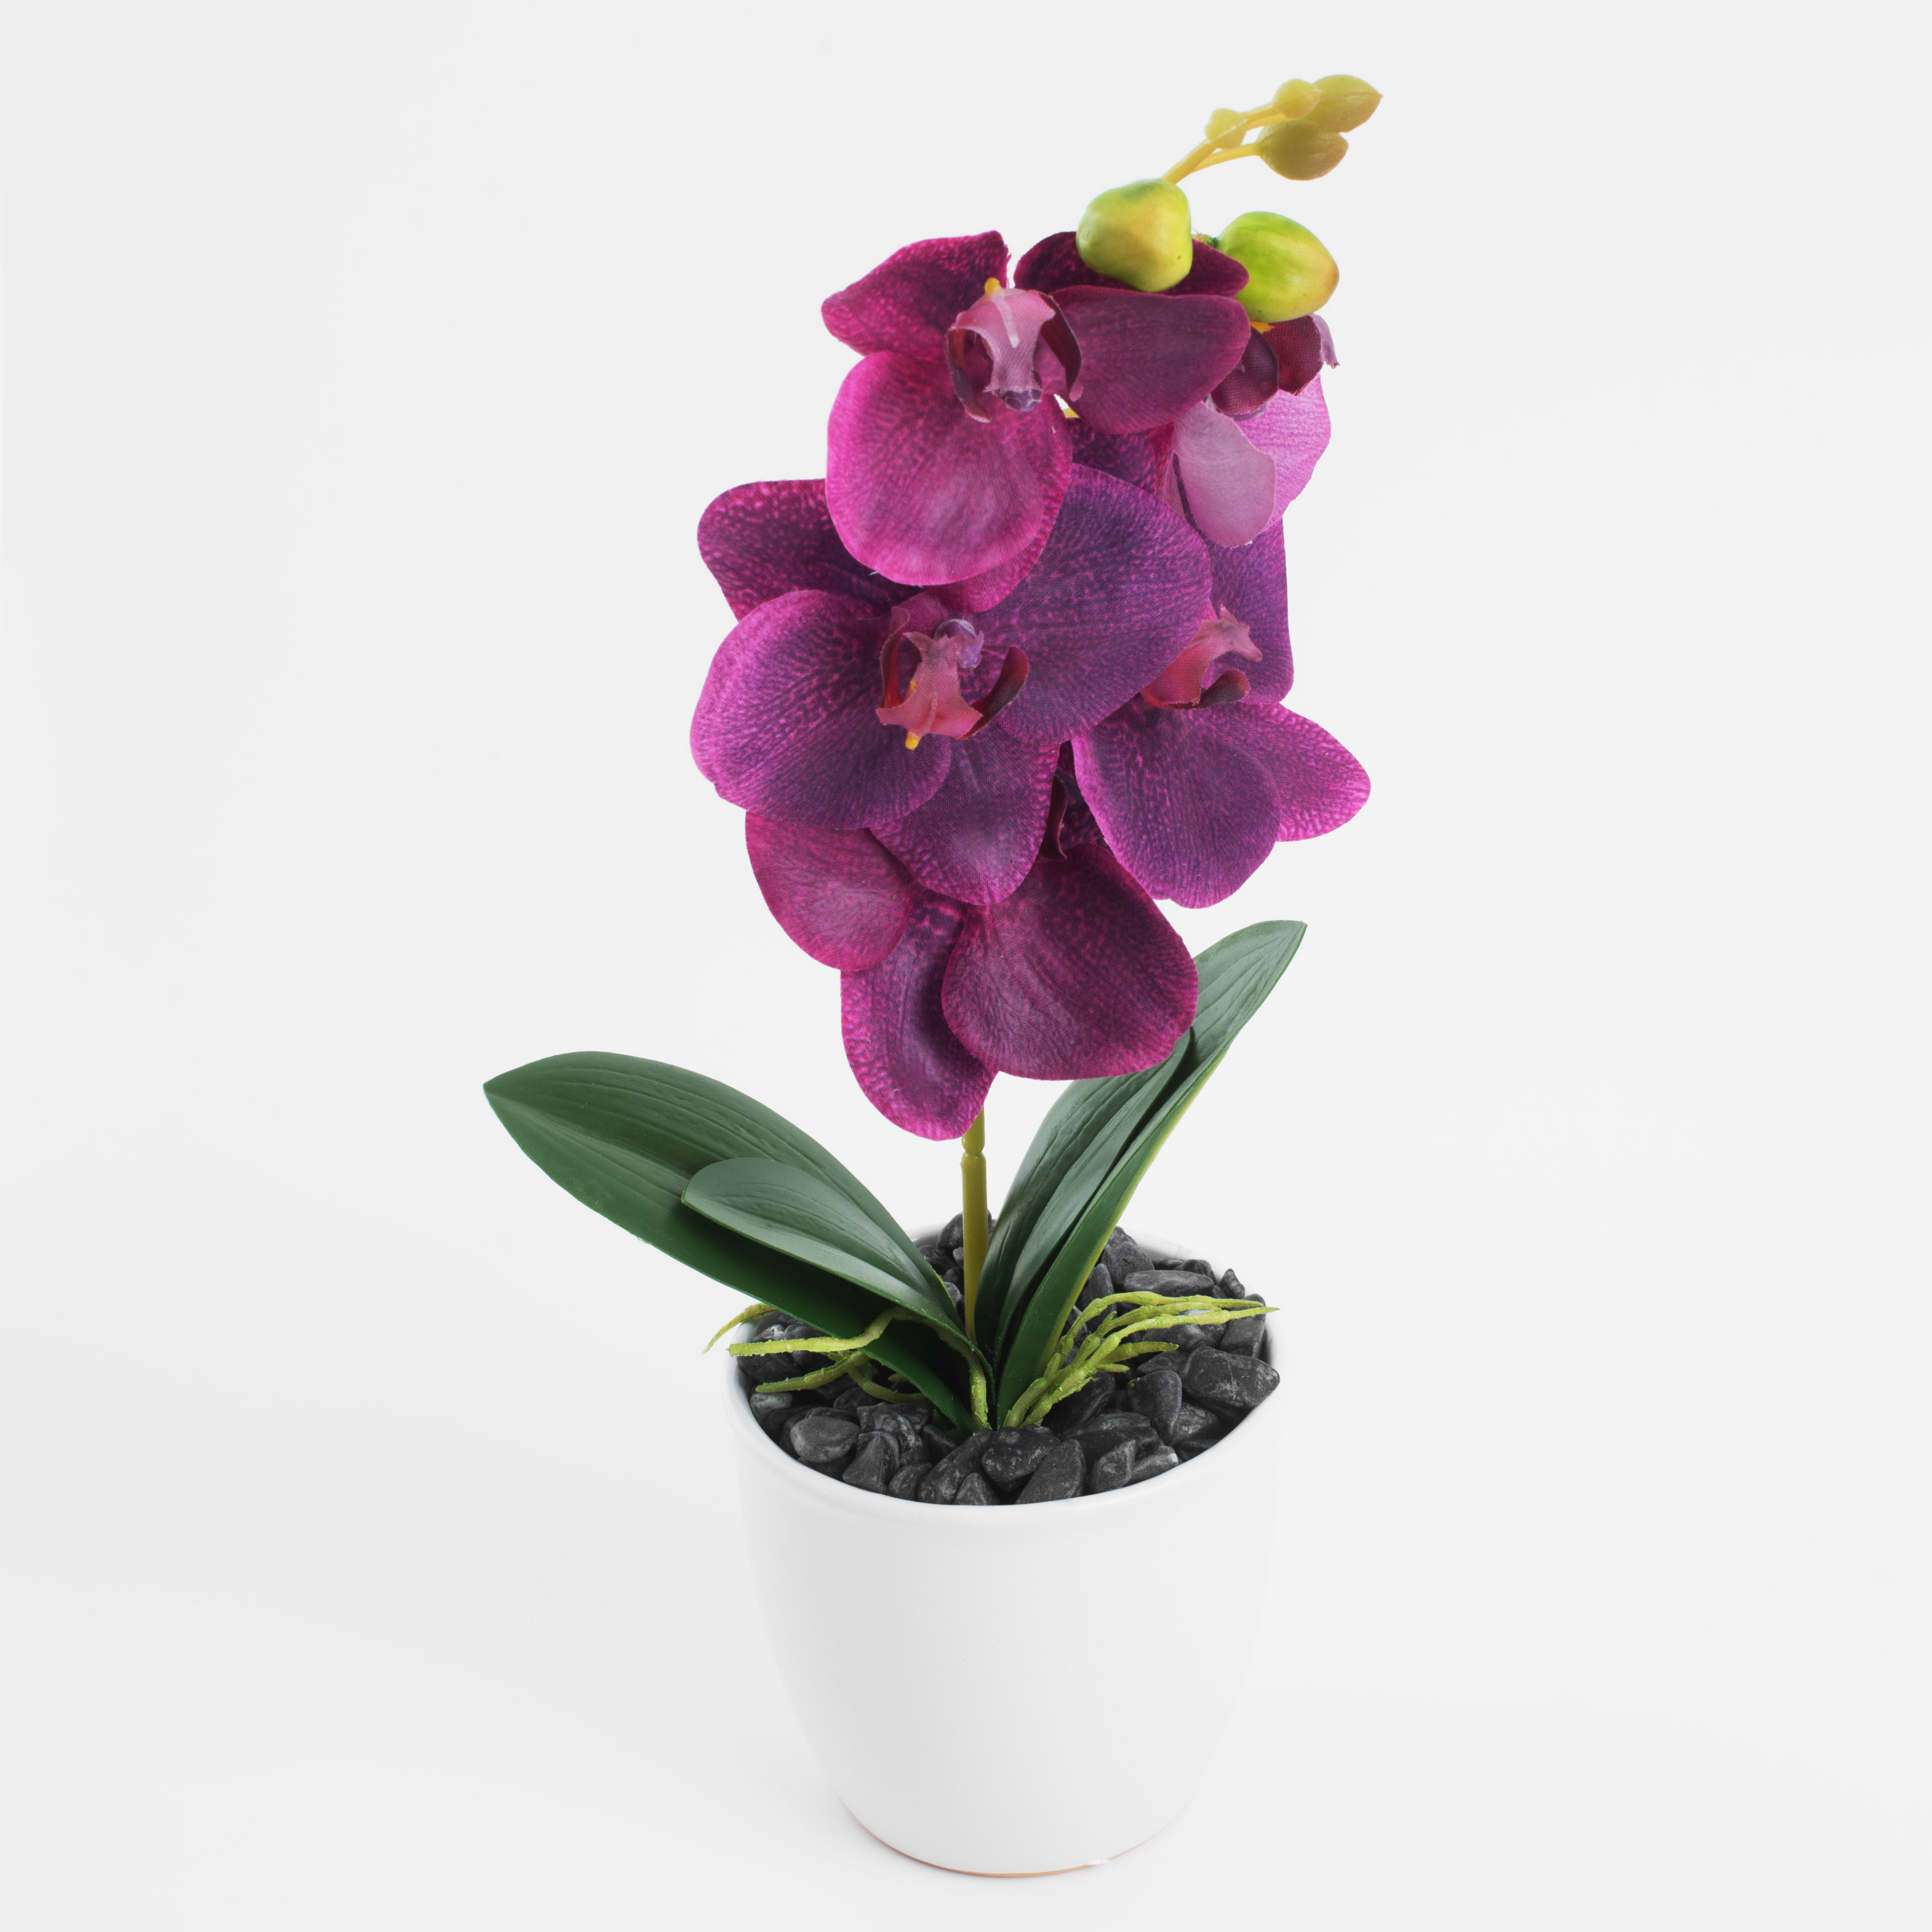 Растение искусственное, 35 см, в горшке, полиэстер/керамика, Розовая орхидея, Orchid